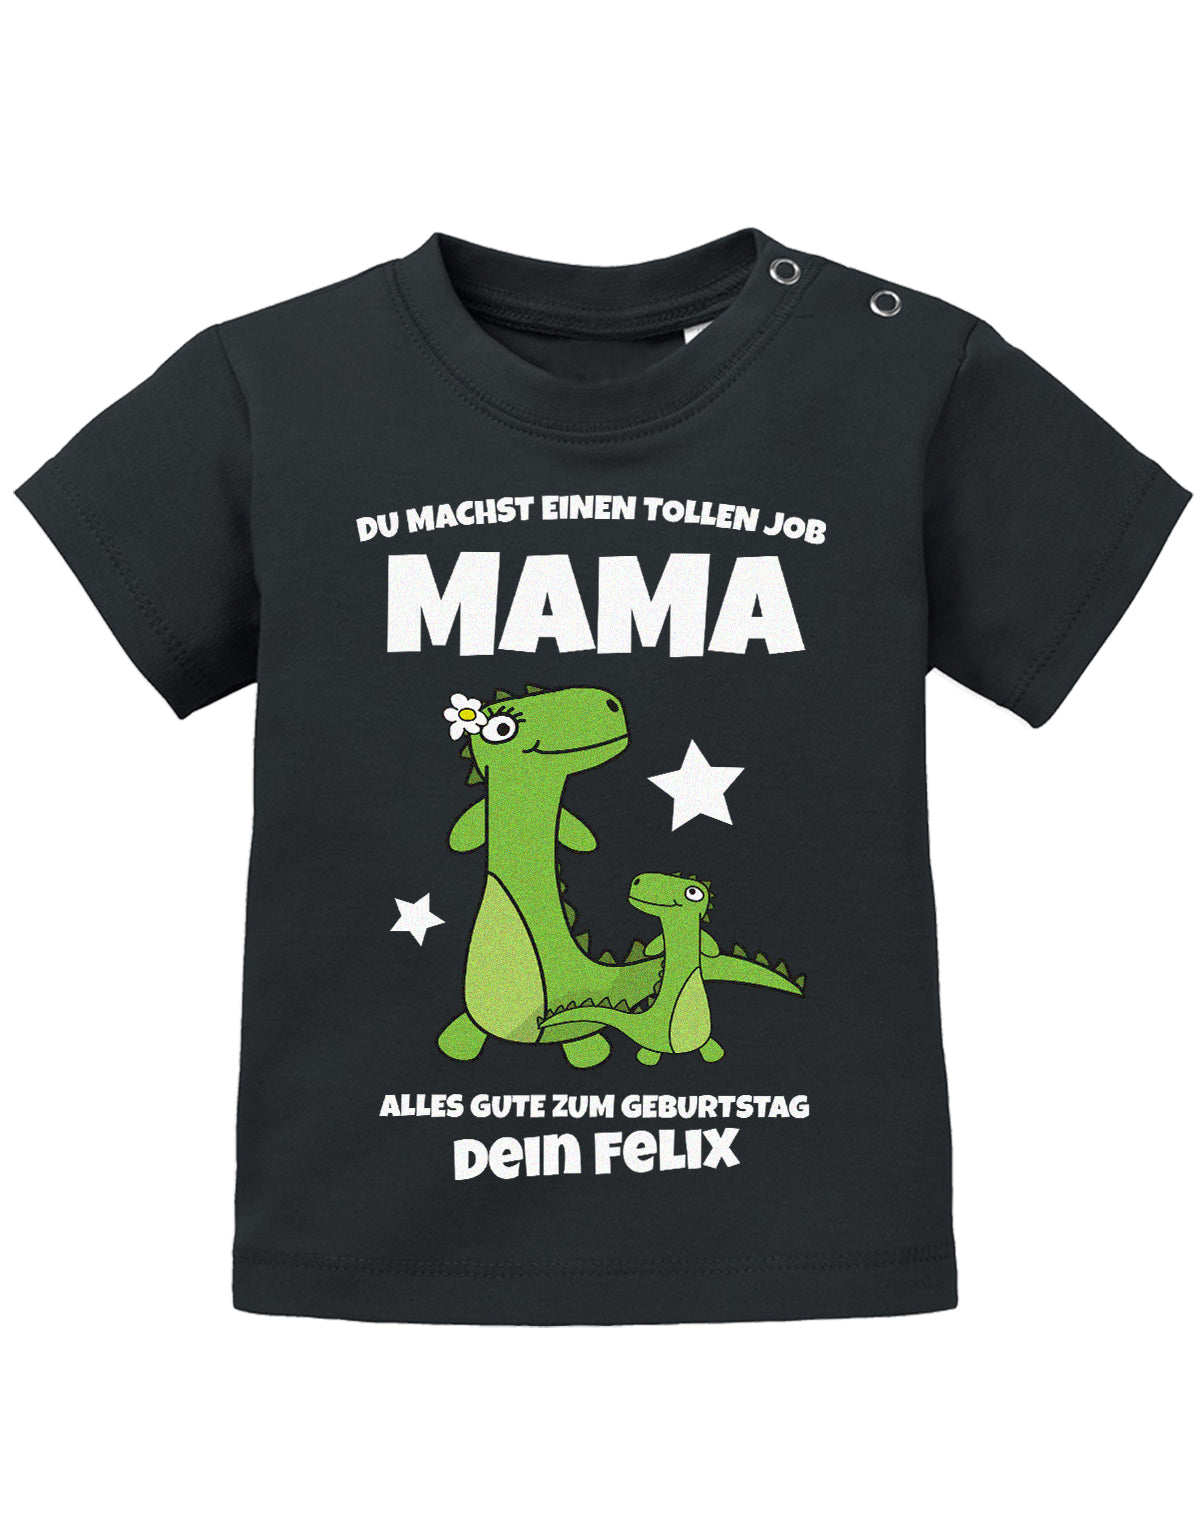 Mama Spruch Baby Shirt. Du machst einen tollen Job, Mama. Alles Gute zum Geburtstag. Personalisiert mit Namen. Schwarz